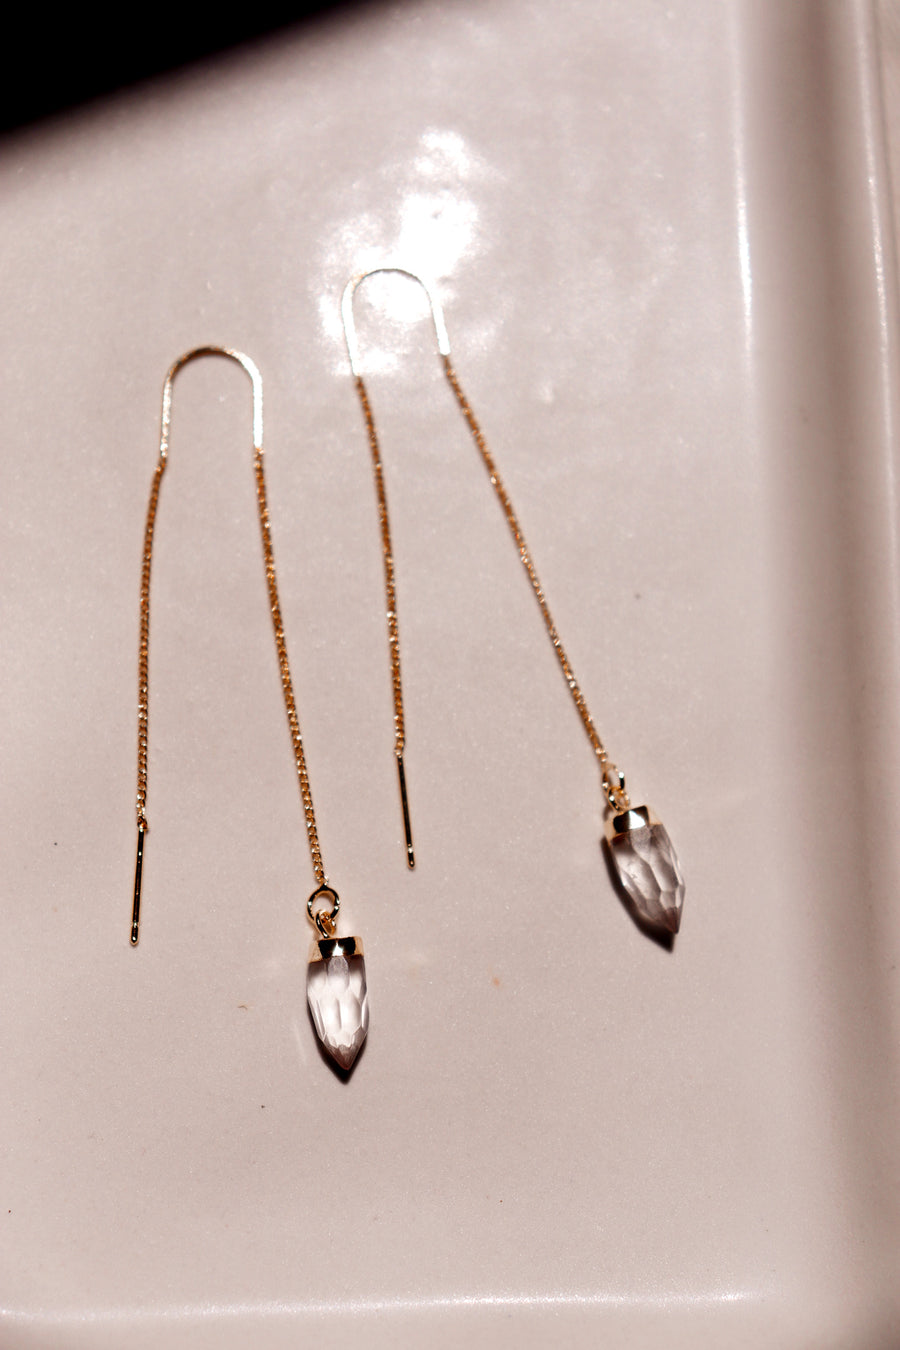 Faceted quartz suncatcher threader earrings